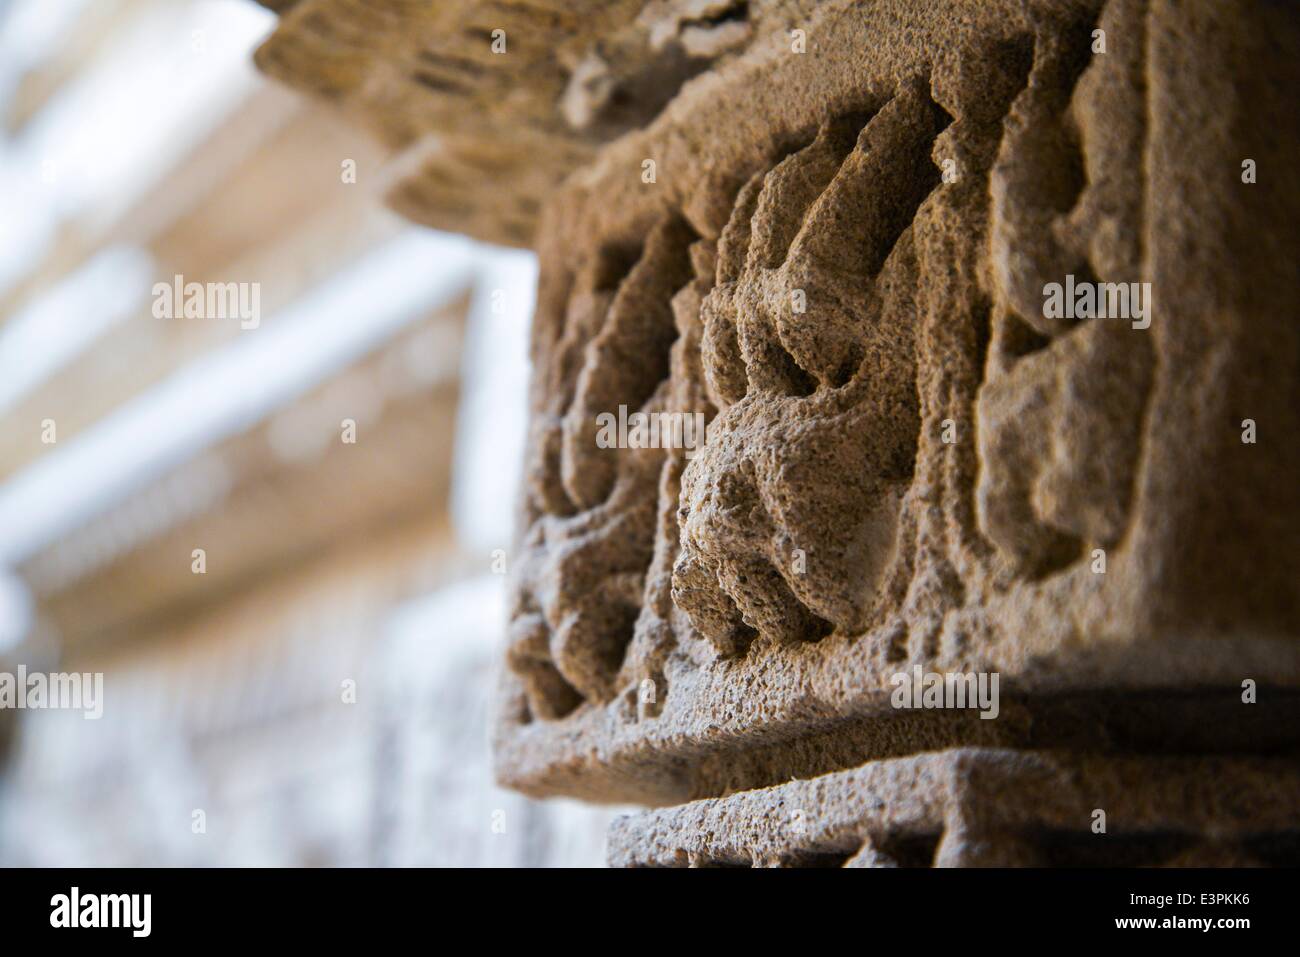 Le intricate sculture di struttura dei "Rani-ki-Vav'. Rani Ki Vav è uno dei più raffinati pozzetto gradini Nei punti in India. Si tratta di un stepwell in Gujarat costruito nel XI secolo in memoria di re Bhimdev I della dinastia Solanki. Il stepwell è stato approvato dall'UNESCO come Sito del Patrimonio Mondiale per la sua eccezionale esempio di sviluppo tecnologico in utilizzando le risorse sotterranee. (Foto di Nisarg Lakhamani/Pacific Stampa) Foto Stock